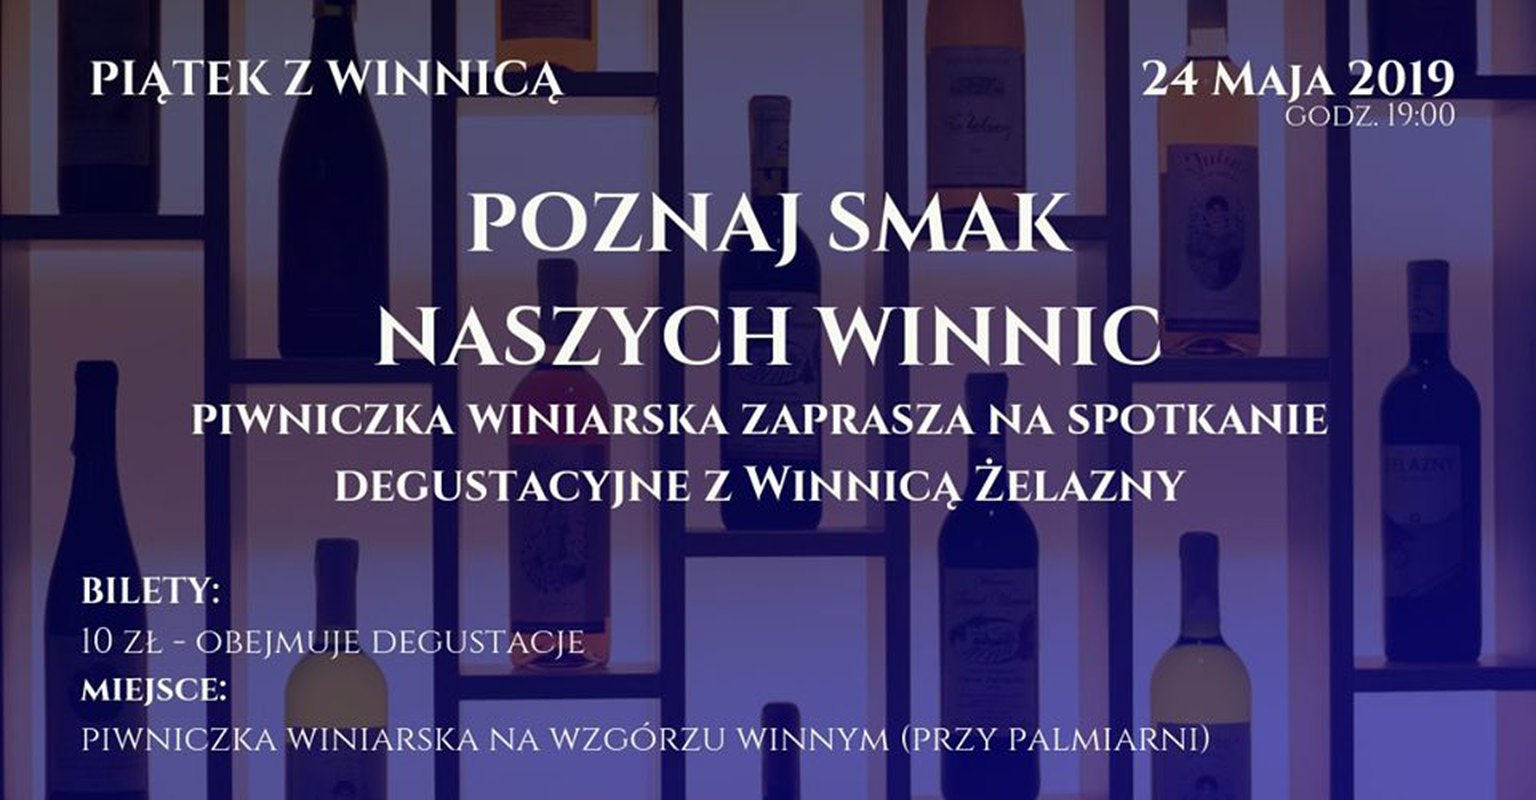 Piątek z Winnicą cz. 16 - Winnica Żelazny